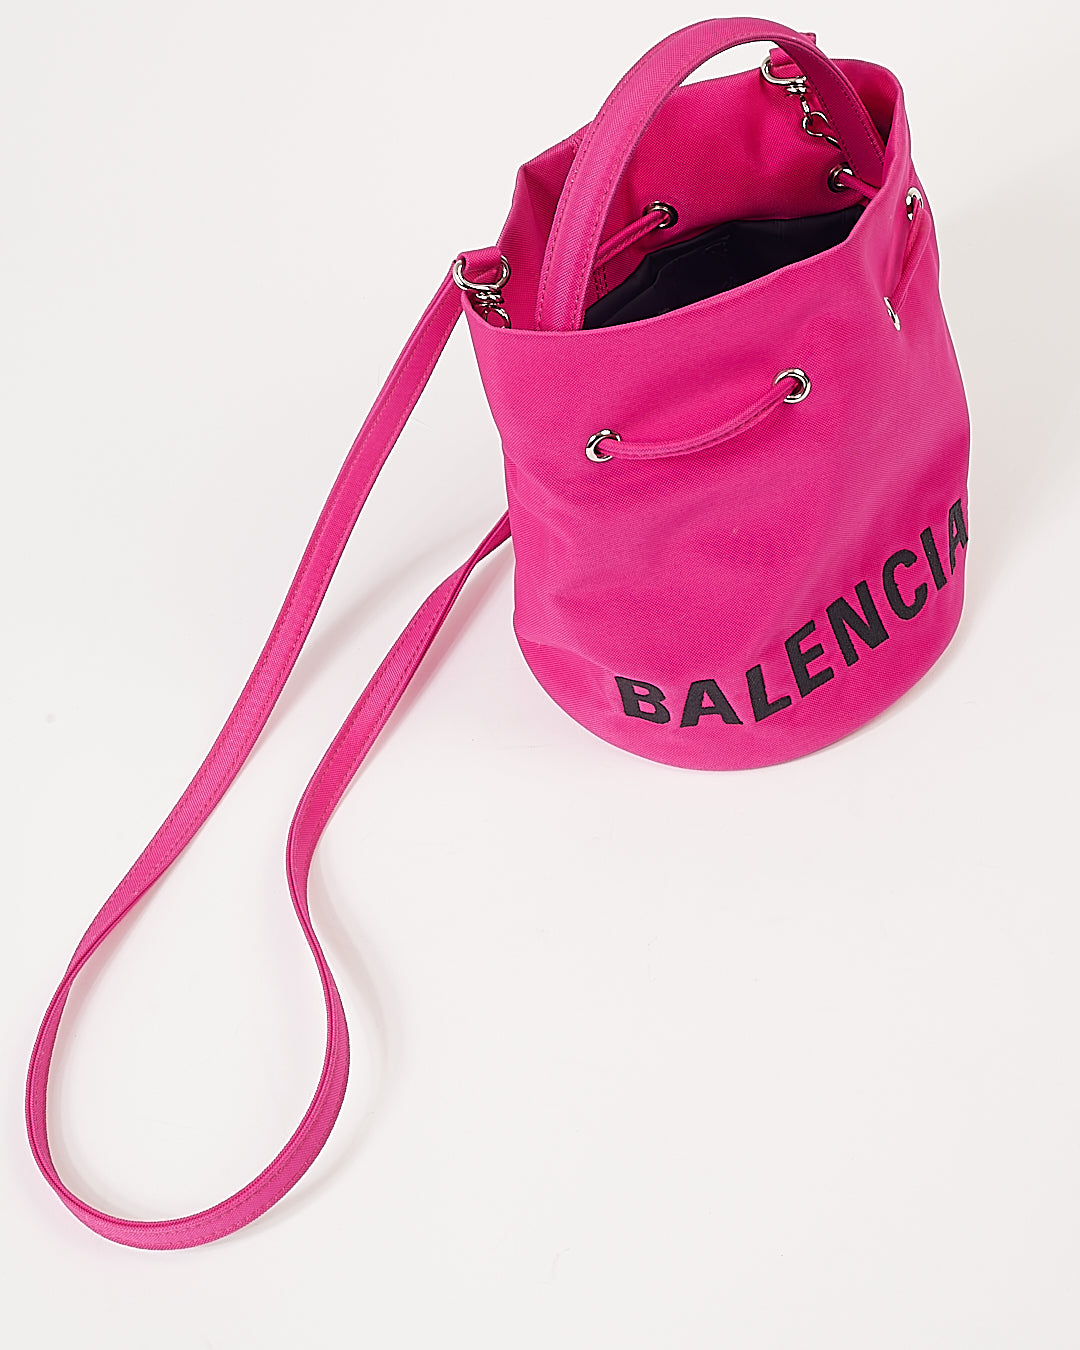 Balenciaga Sac seau à roue avec mini logo rose fuchsia